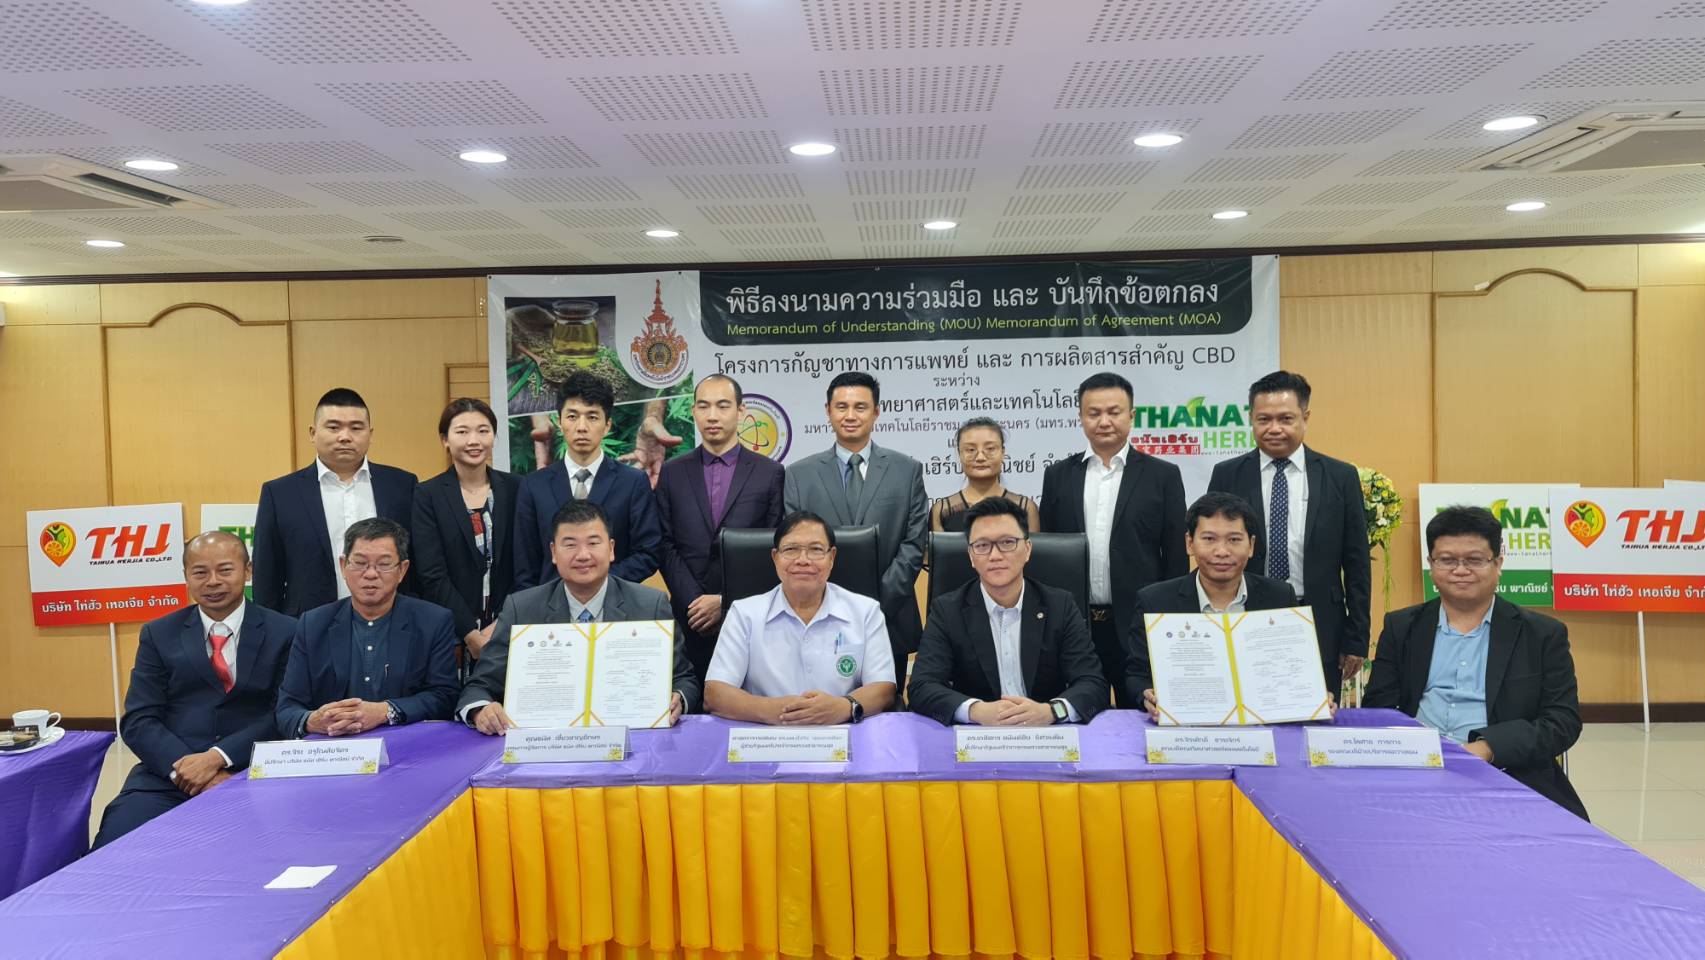 泰国泰宝药业集团与MOU和MOA合作签约仪式在泰国举行